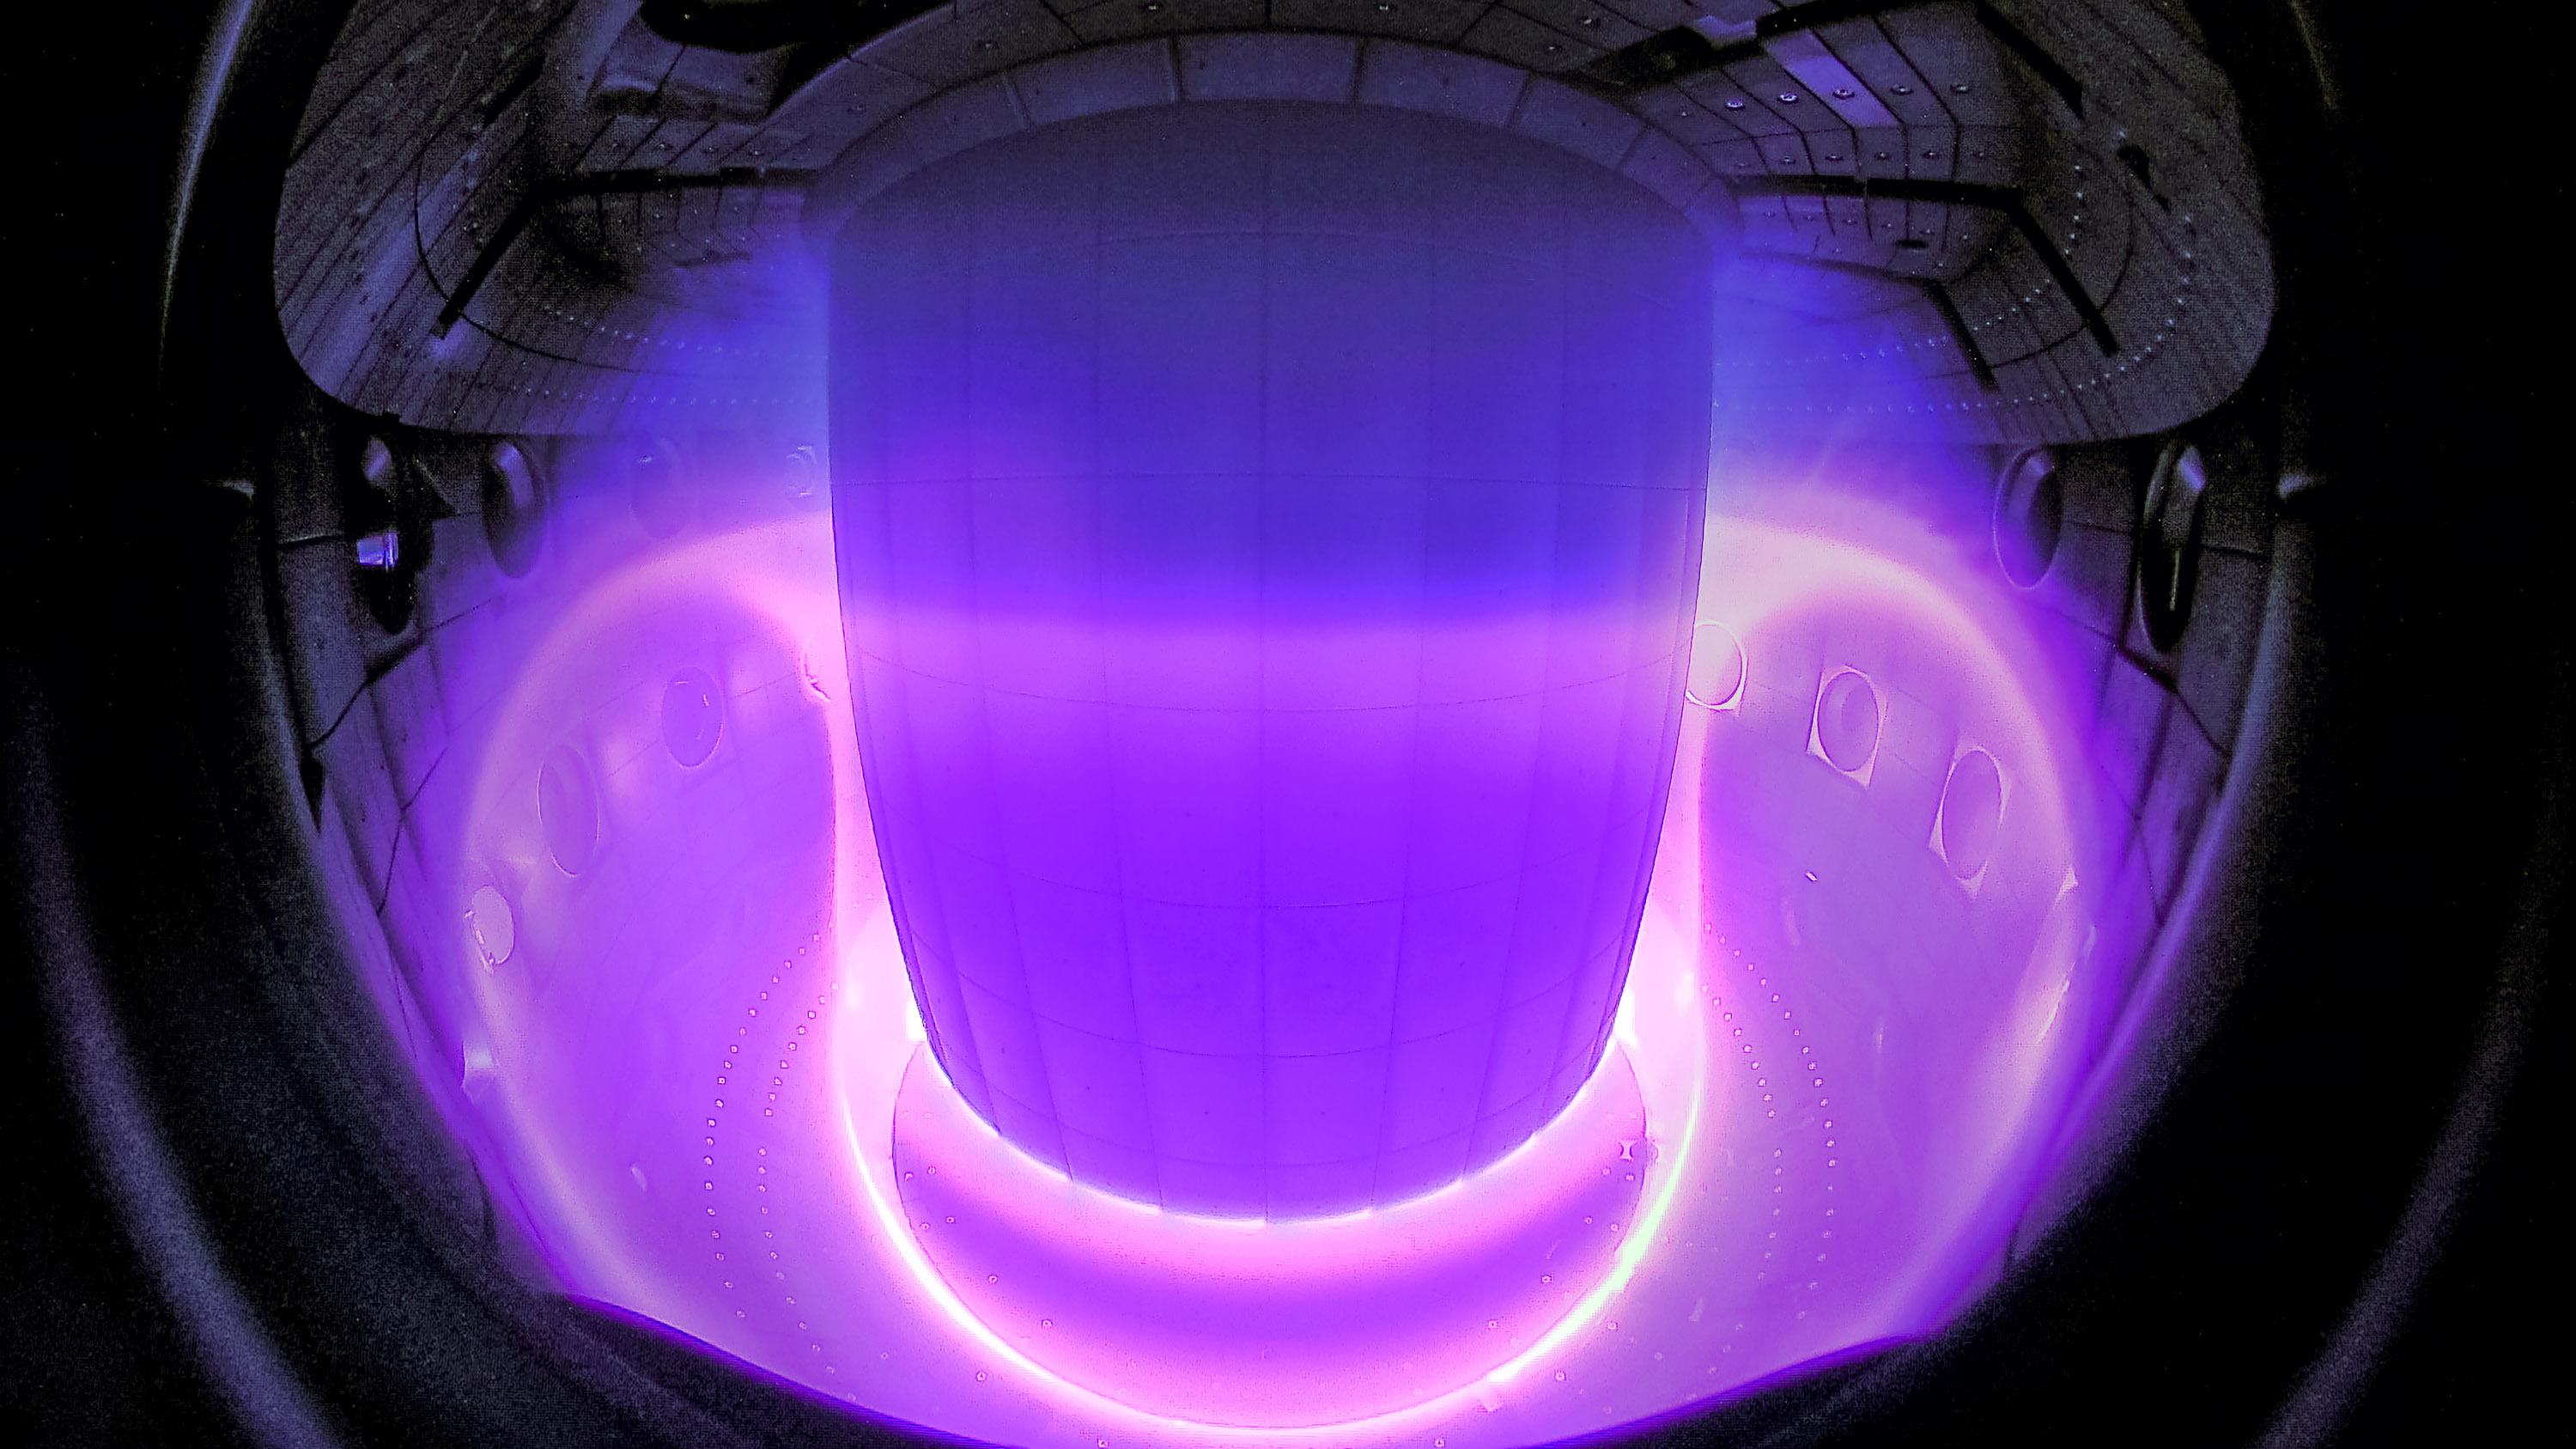 DeepMind's AI can control superheated plasma inside a fusion